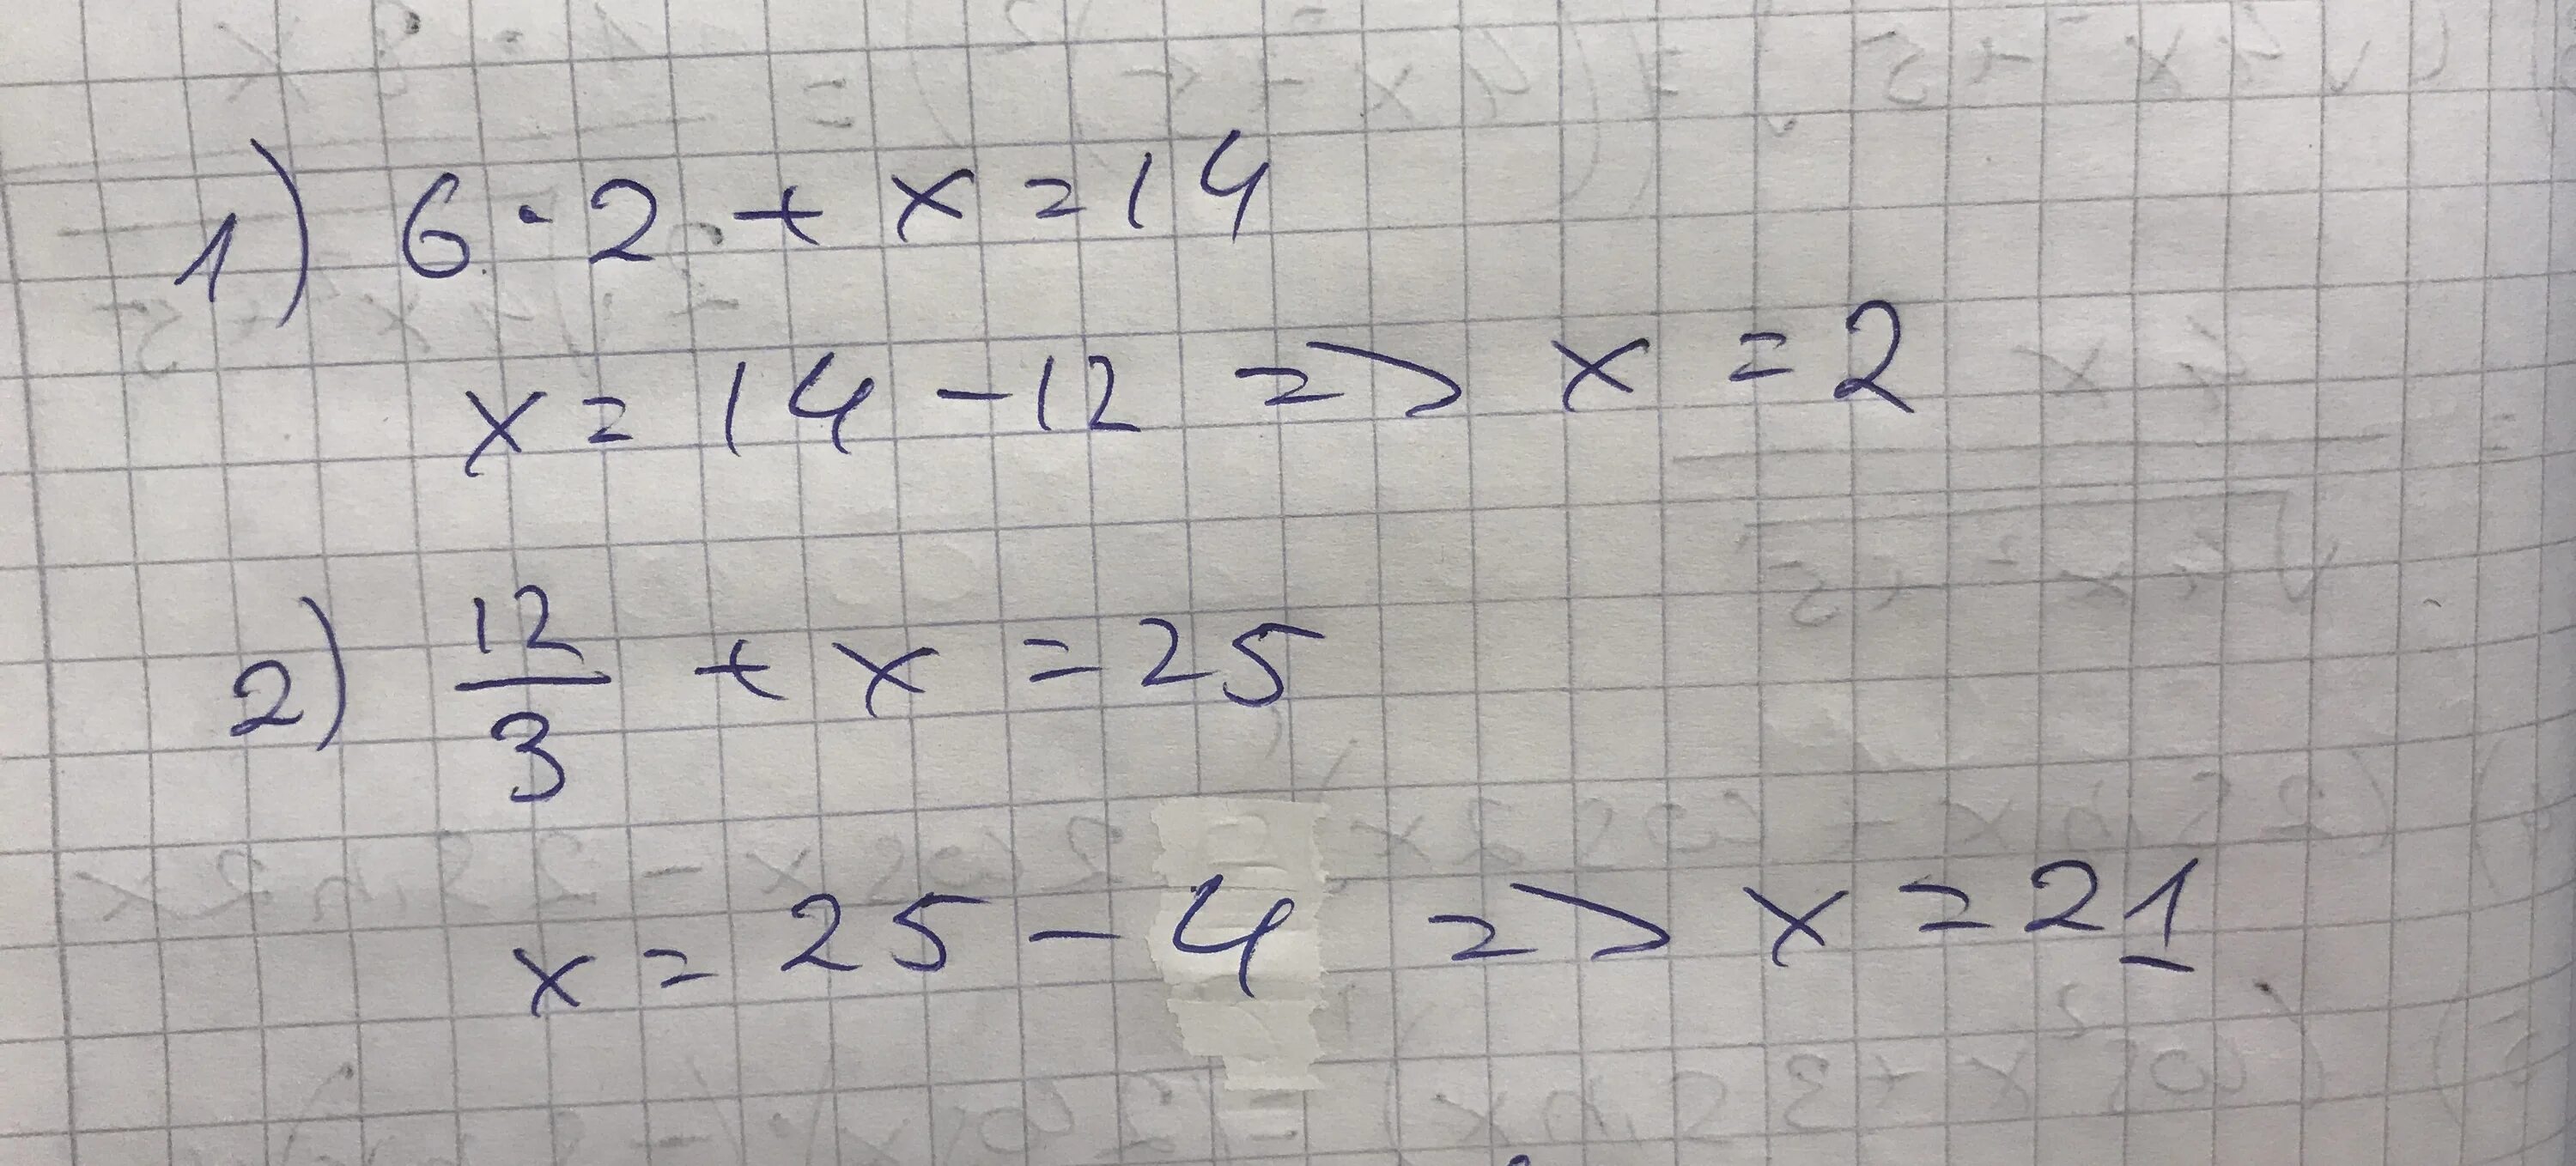 12 разделить на икс равно 3. Решение уравнения 12 разделить на Икс равно 3. Уравнение Икс разделить на 3 равно 6. Минус 2 Икс деленное на 5 и минус 2 Икс деленное на 3. Икс равно.